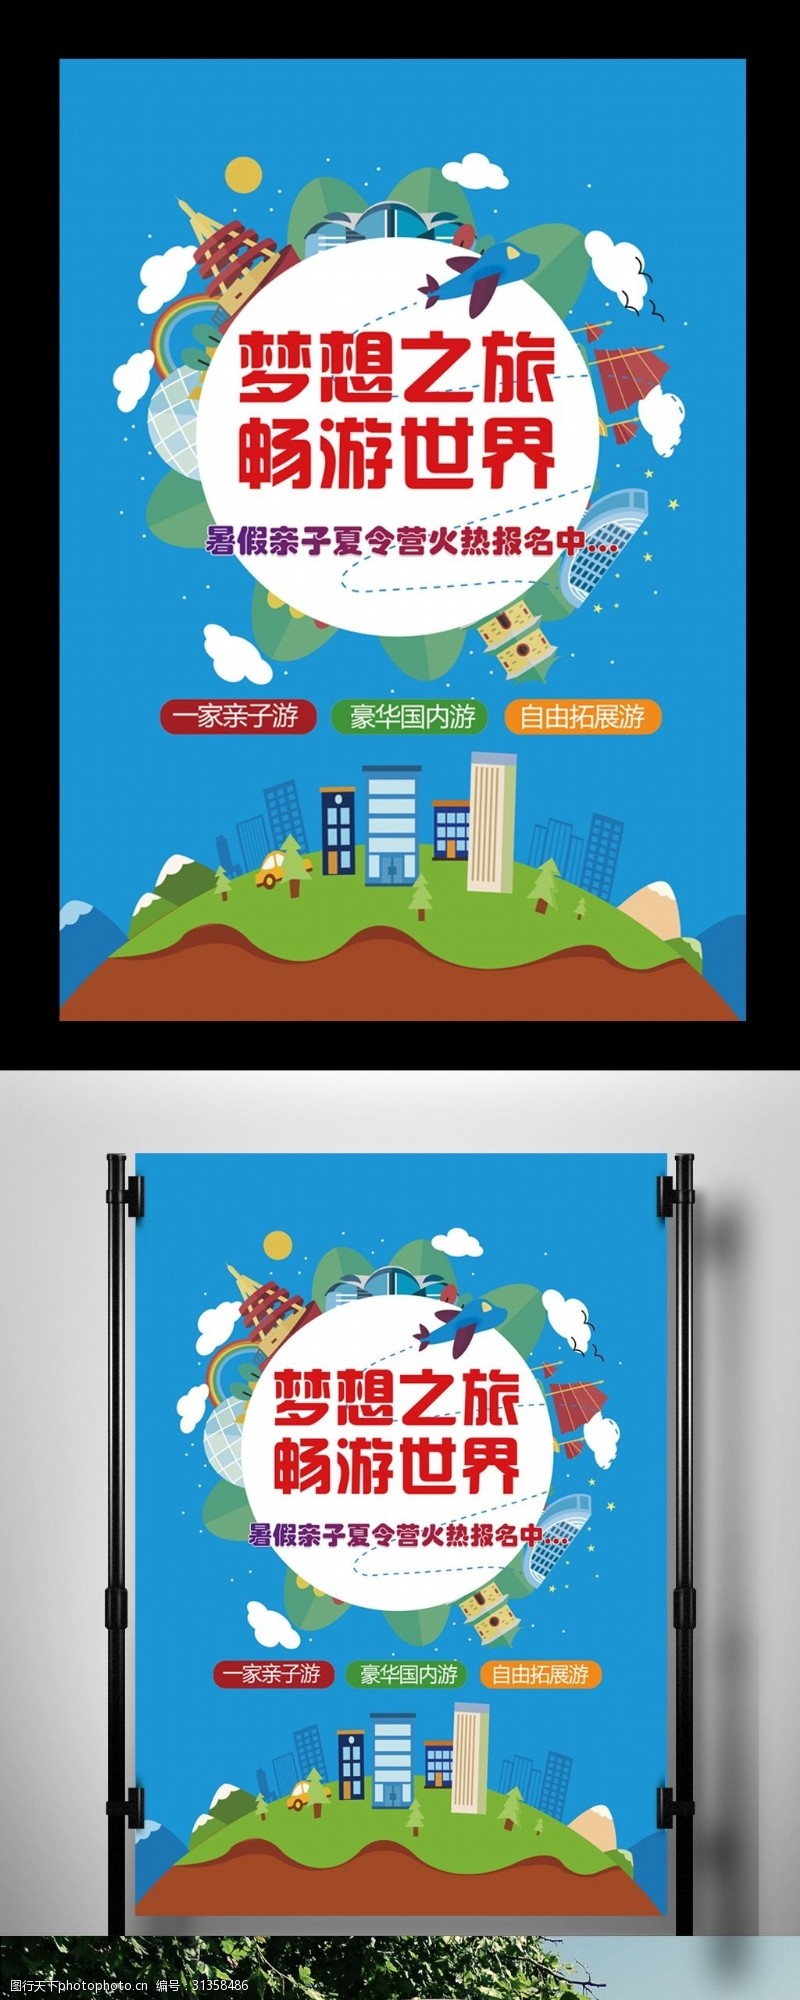 畅游日本蓝色简约旅游宣传海报设计